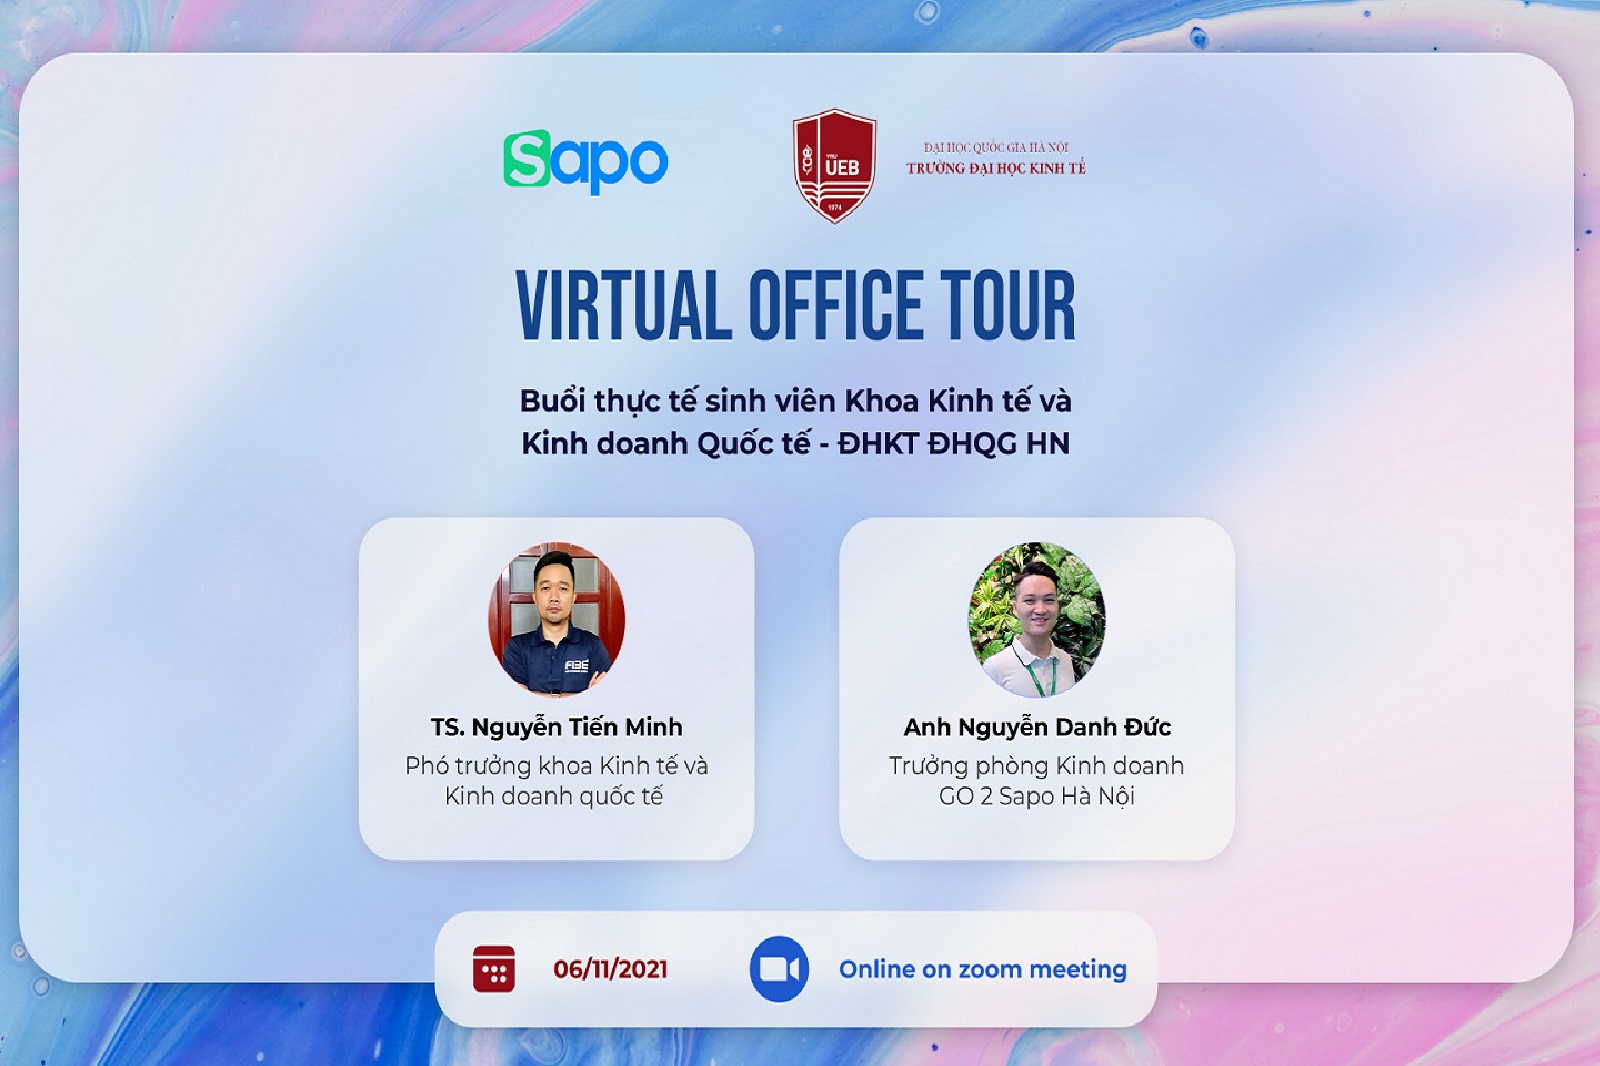 Sapo virtual tour - Buổi thực tế của sinh viên Khoa Kinh tế và Kinh doanh quốc tế